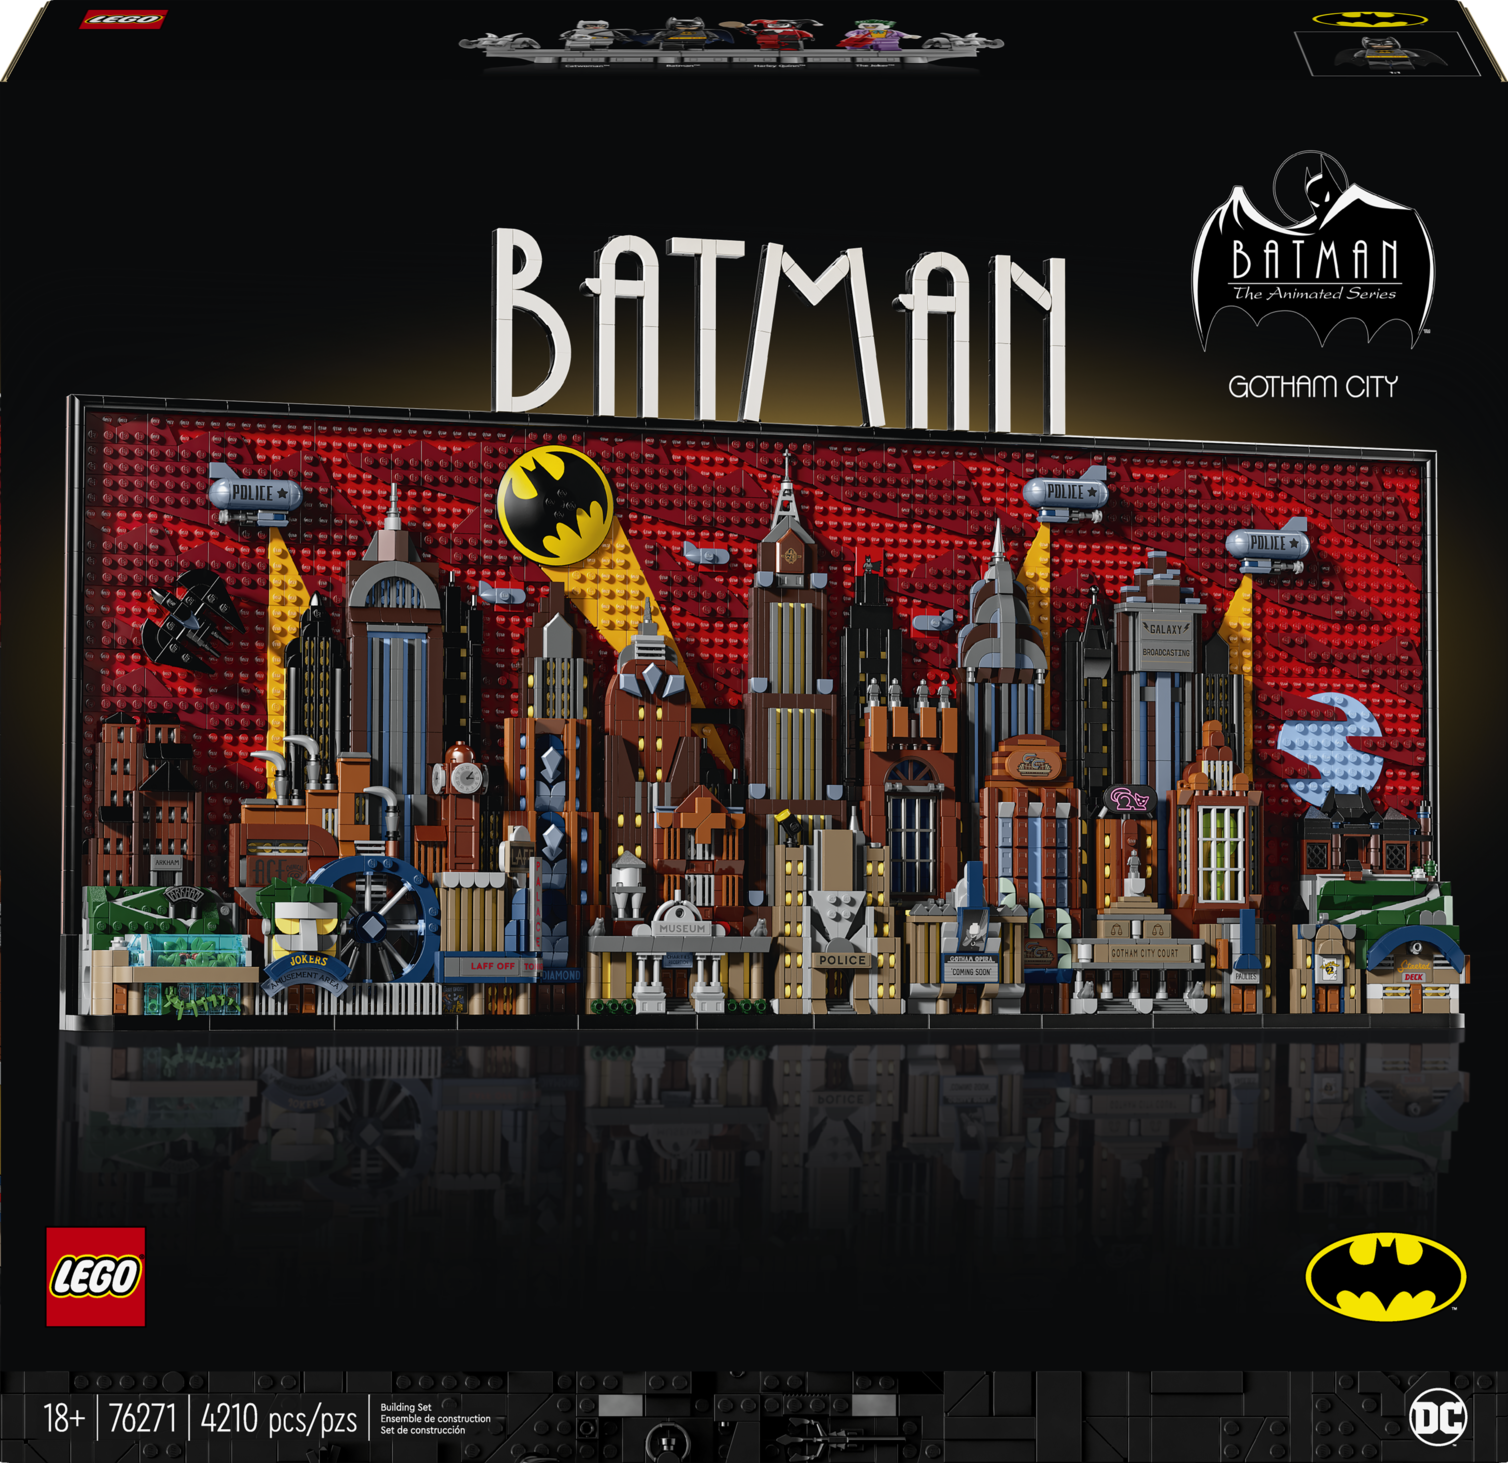 LEGO celebra los 85 años de Batman con un nuevo set 4